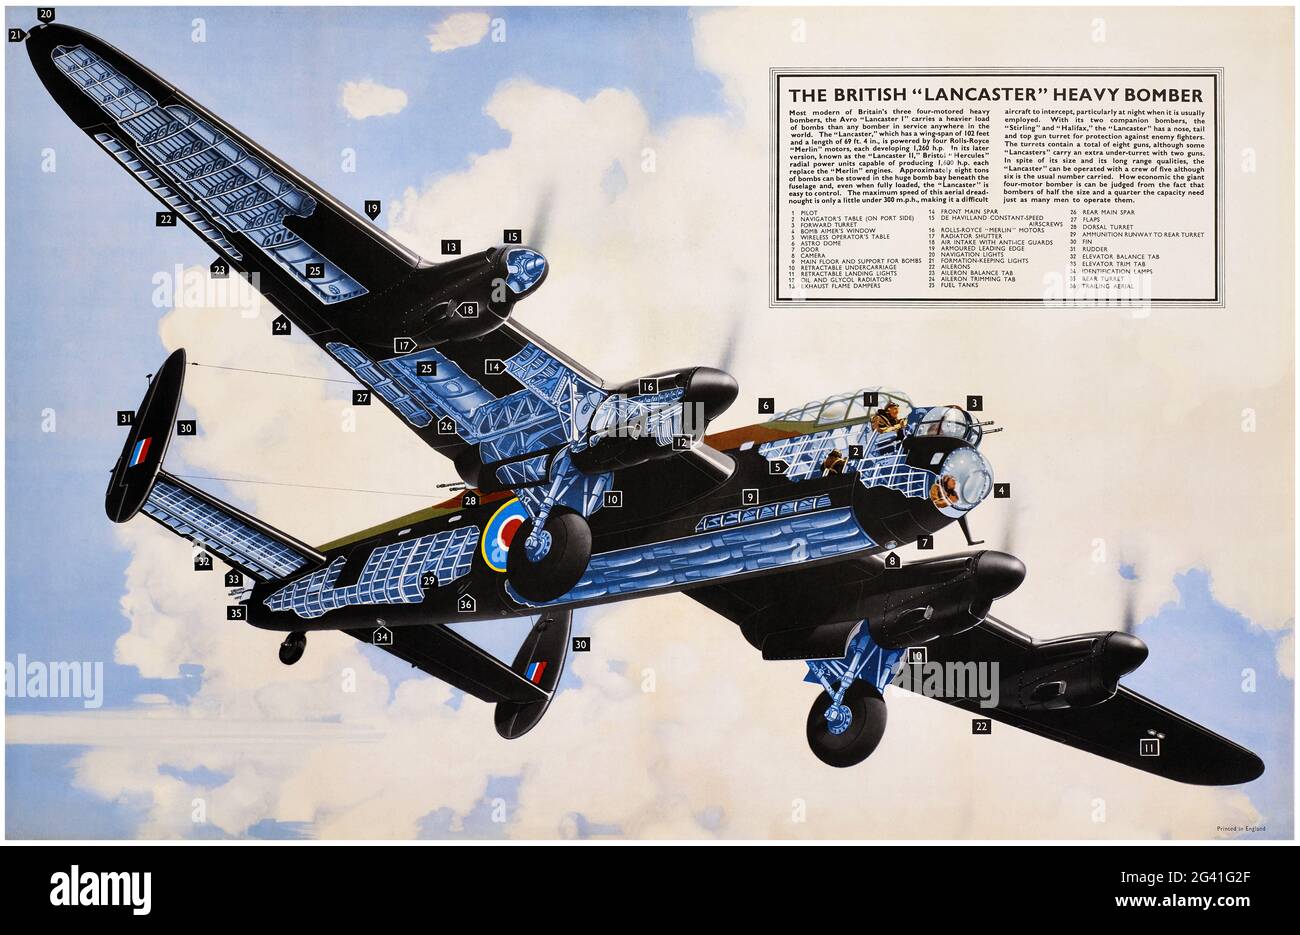 L'bombardier lourd « Lancaster » britannique. Artiste inconnu. Affiche ancienne restaurée publiée en 1942 au Royaume-Uni. Banque D'Images